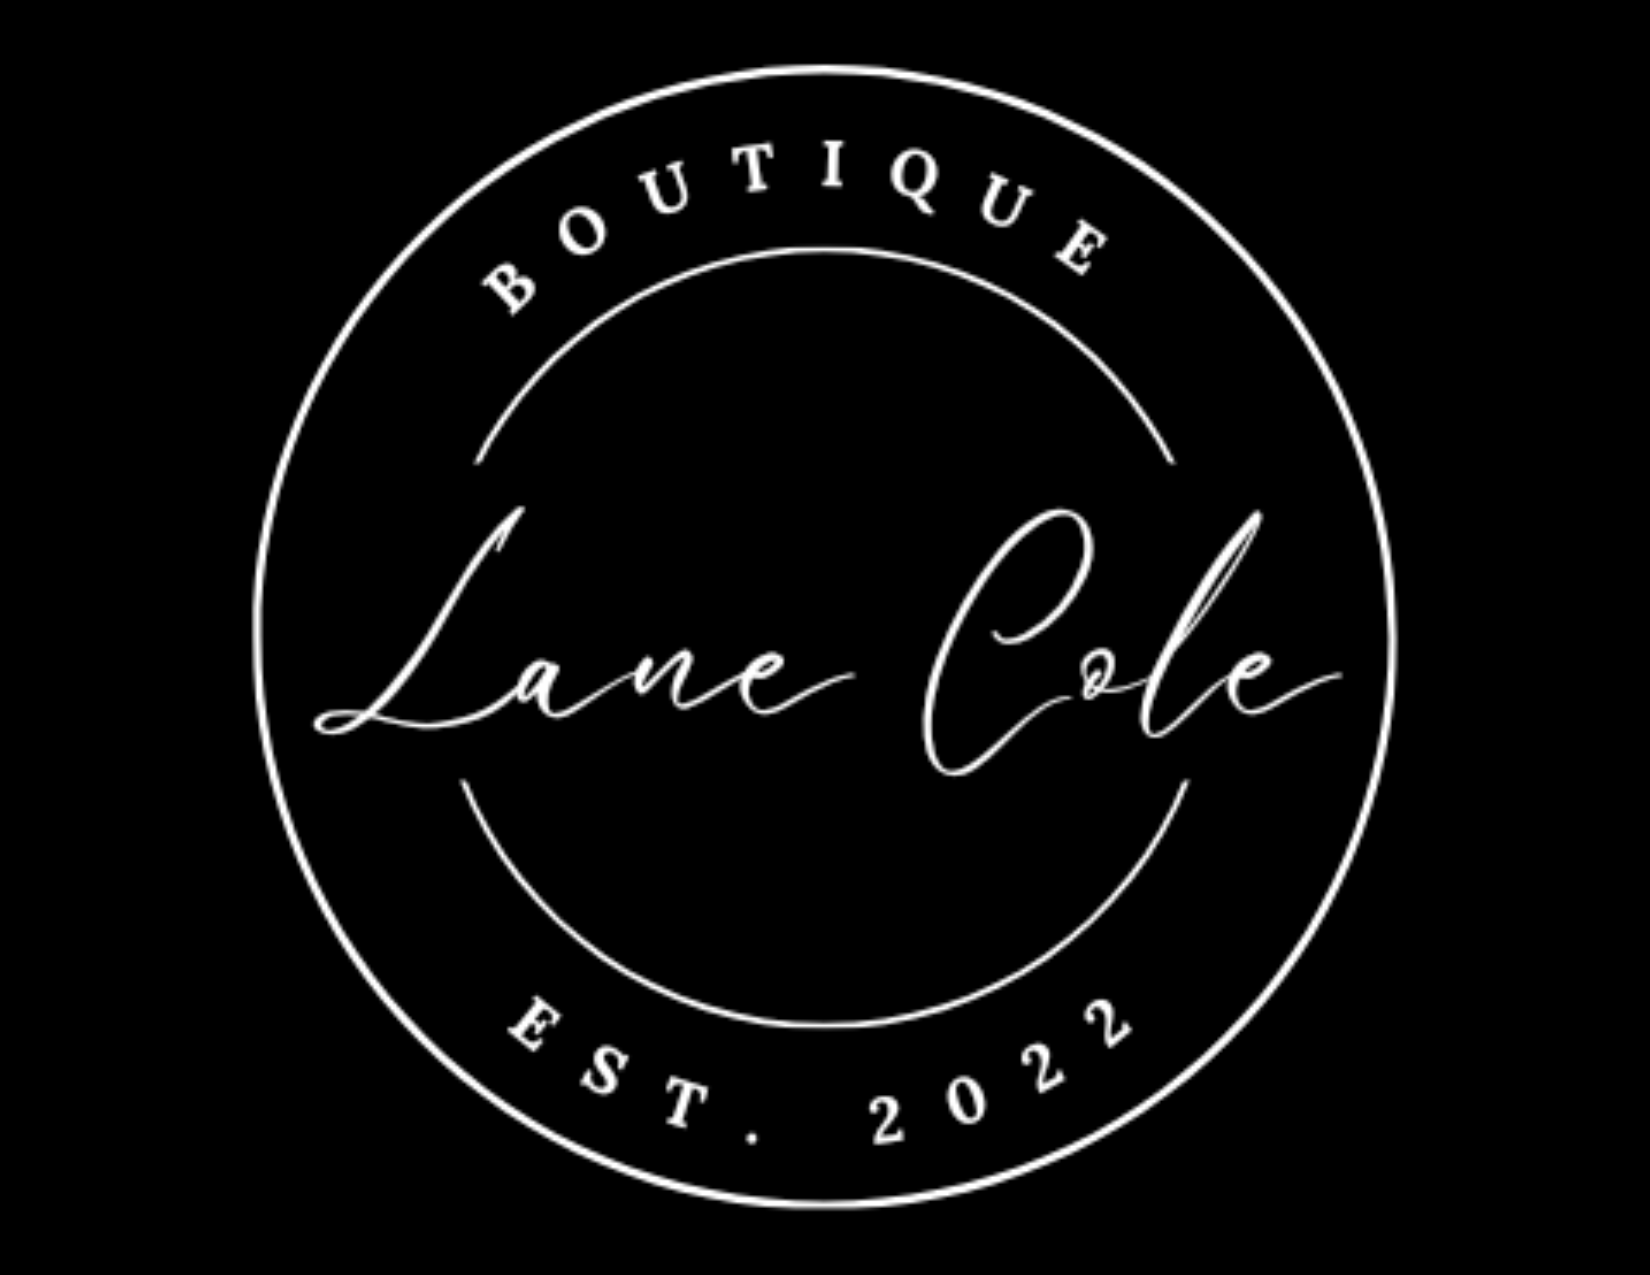 Lane Cole Boutique 